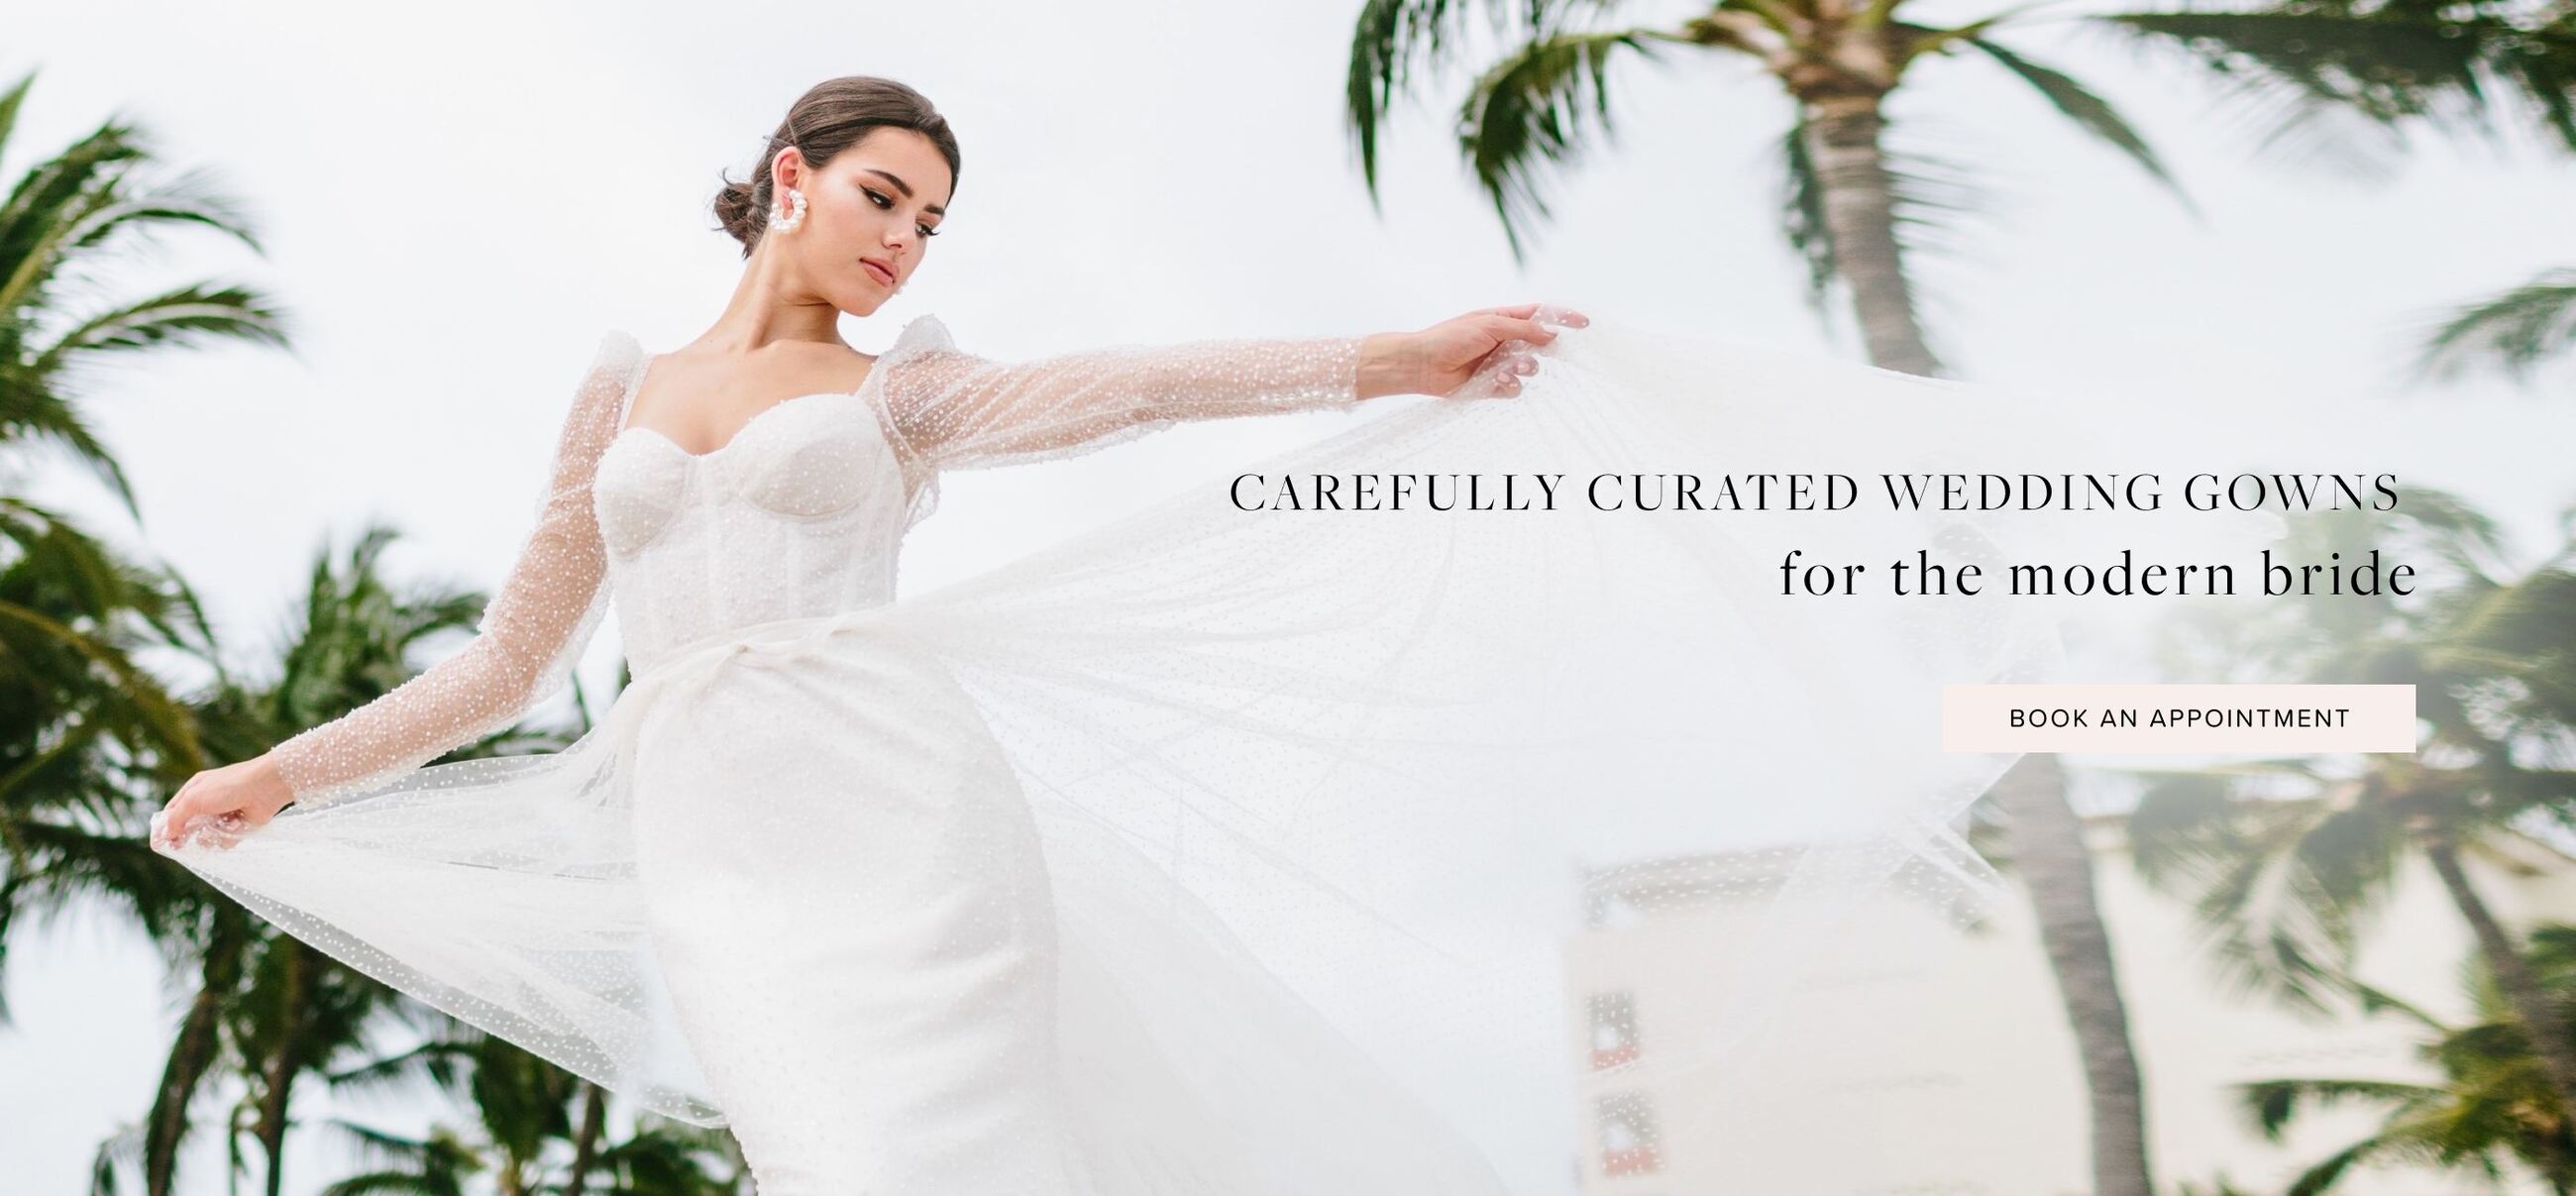 Find your dream wedding dress at Bliss Bridal. Desktop image.